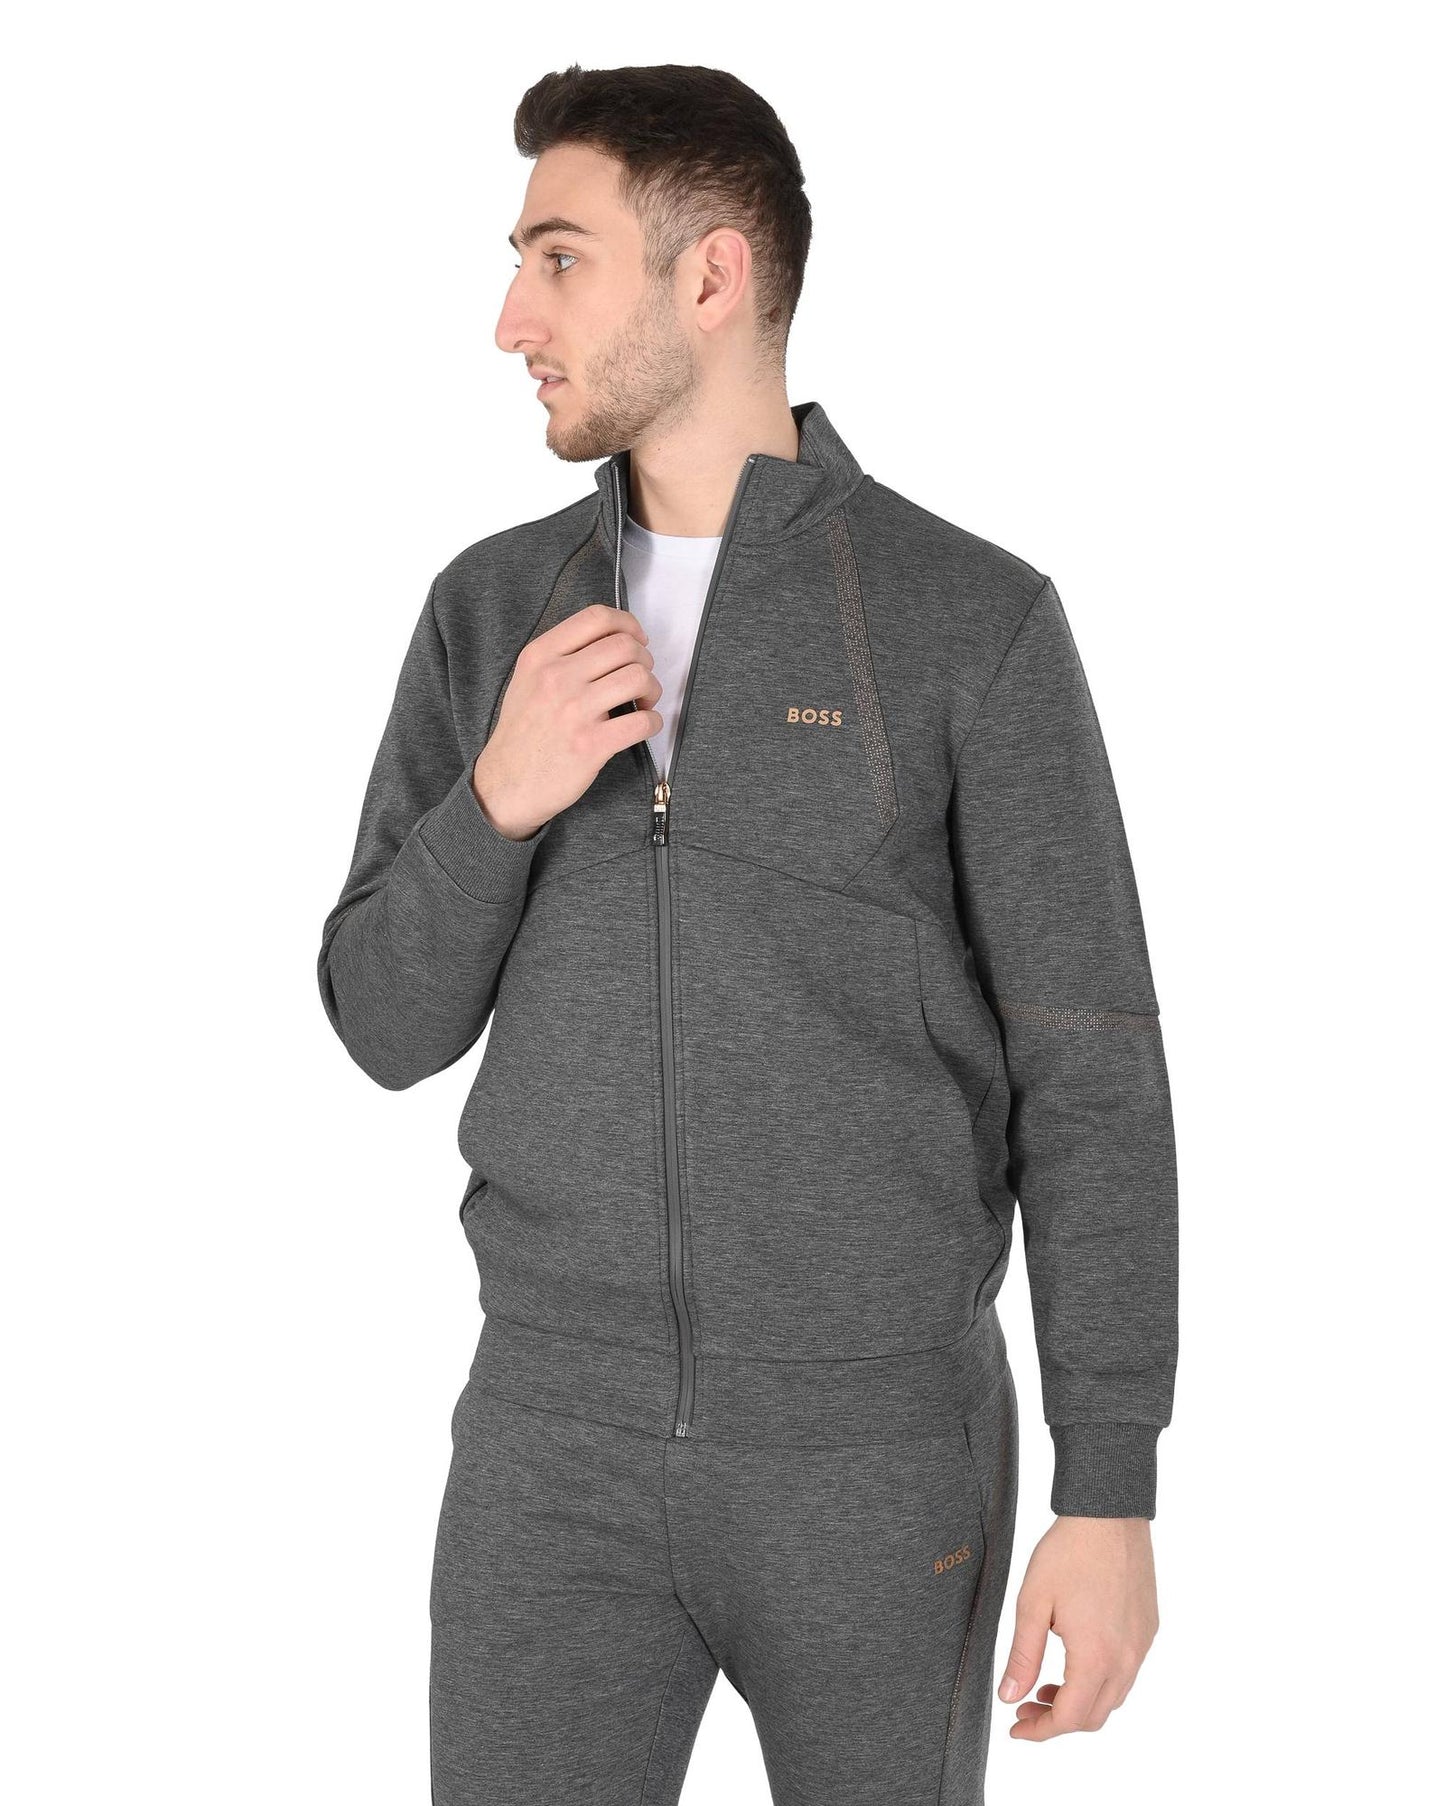 Hugo Boss Men's Grey Cotton Blend Sweatshirt in Grey - M